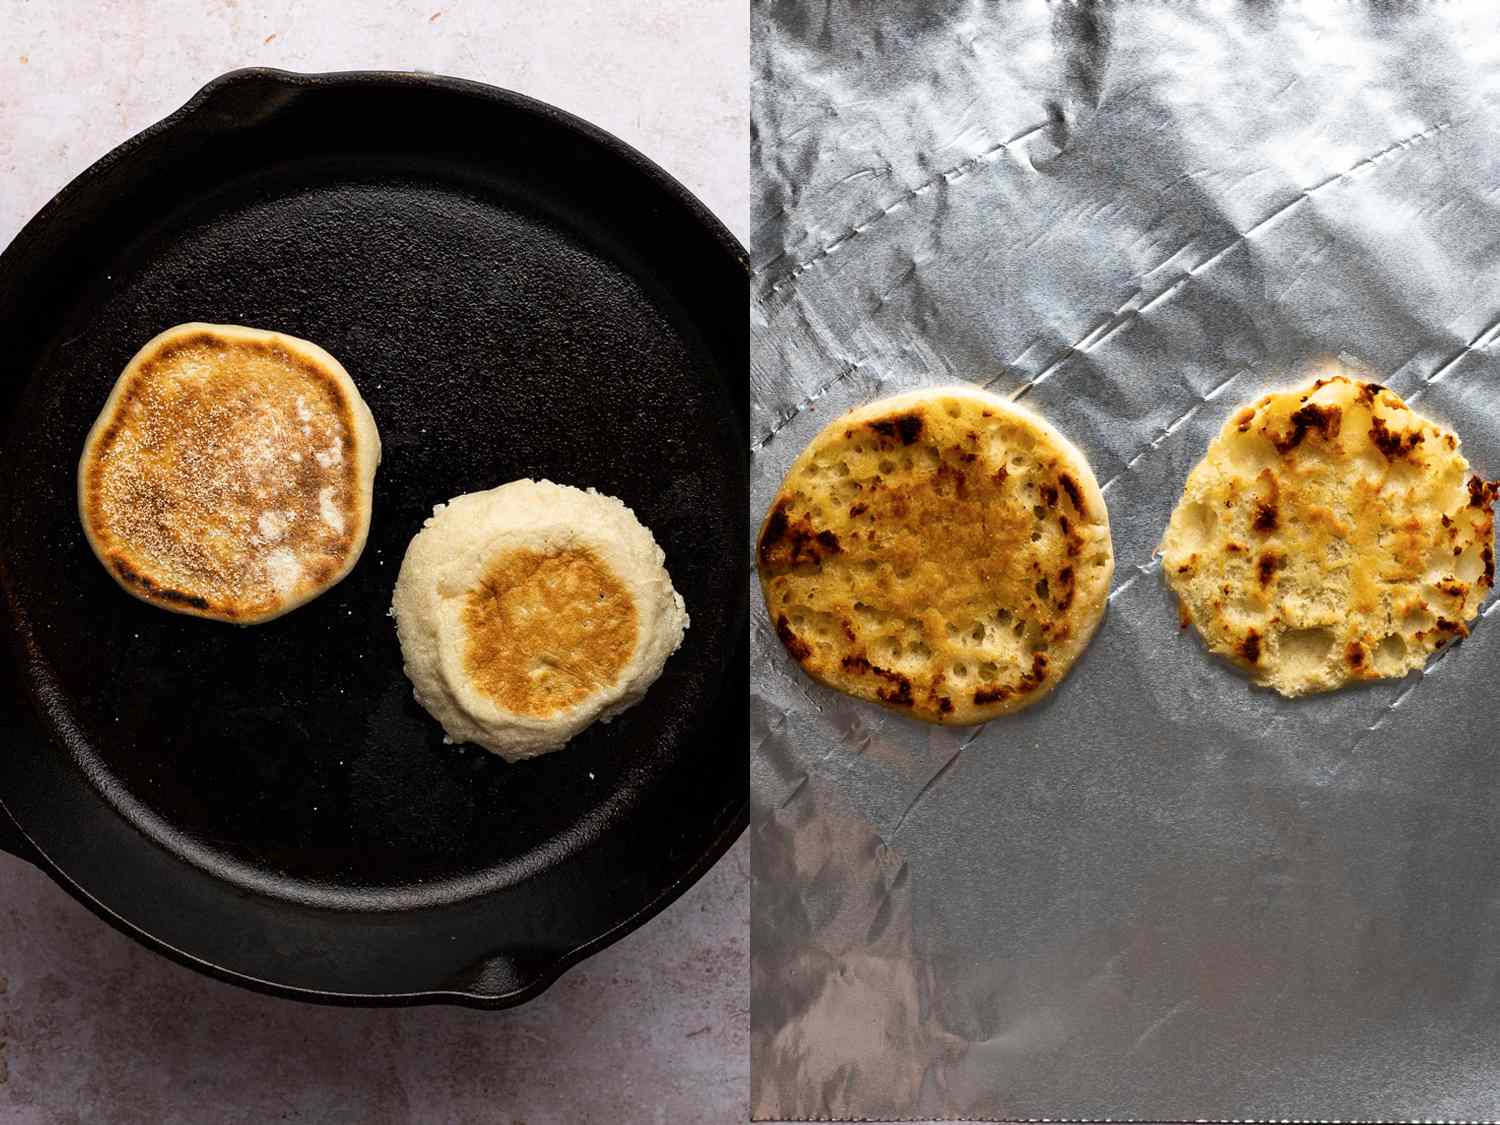 两幅图像的拼贴画。左边的图片显示了一个被切开的英式松饼在铸铁煎锅里烤。右边的图片显示的是一张一分为二的英式松饼，一面朝上烤，放在铝箔纸上。